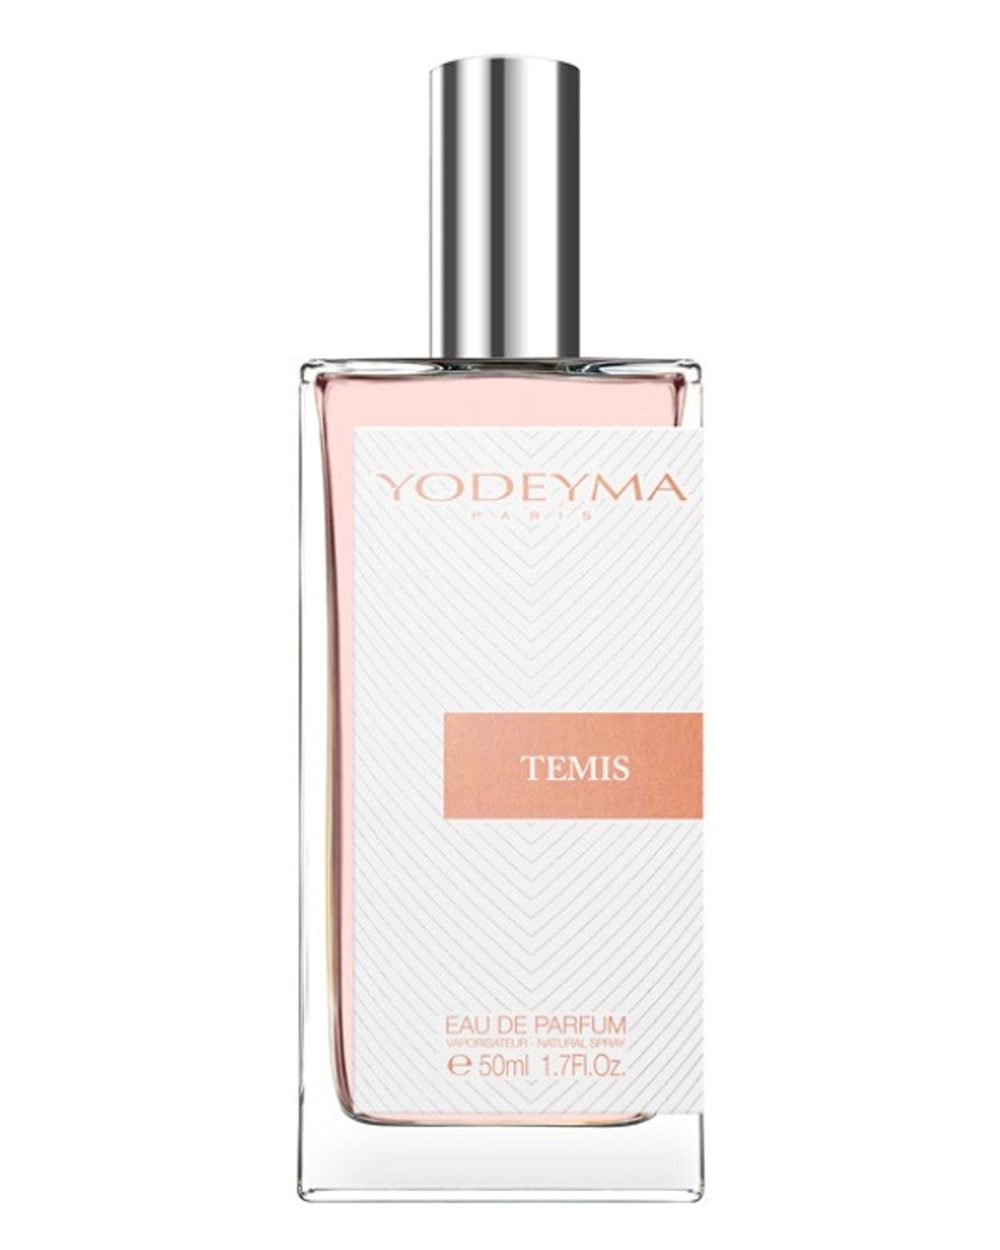 Eau de Parfum YODEYMA Parfum Temis - Eau de Parfum für Damen 50 ml